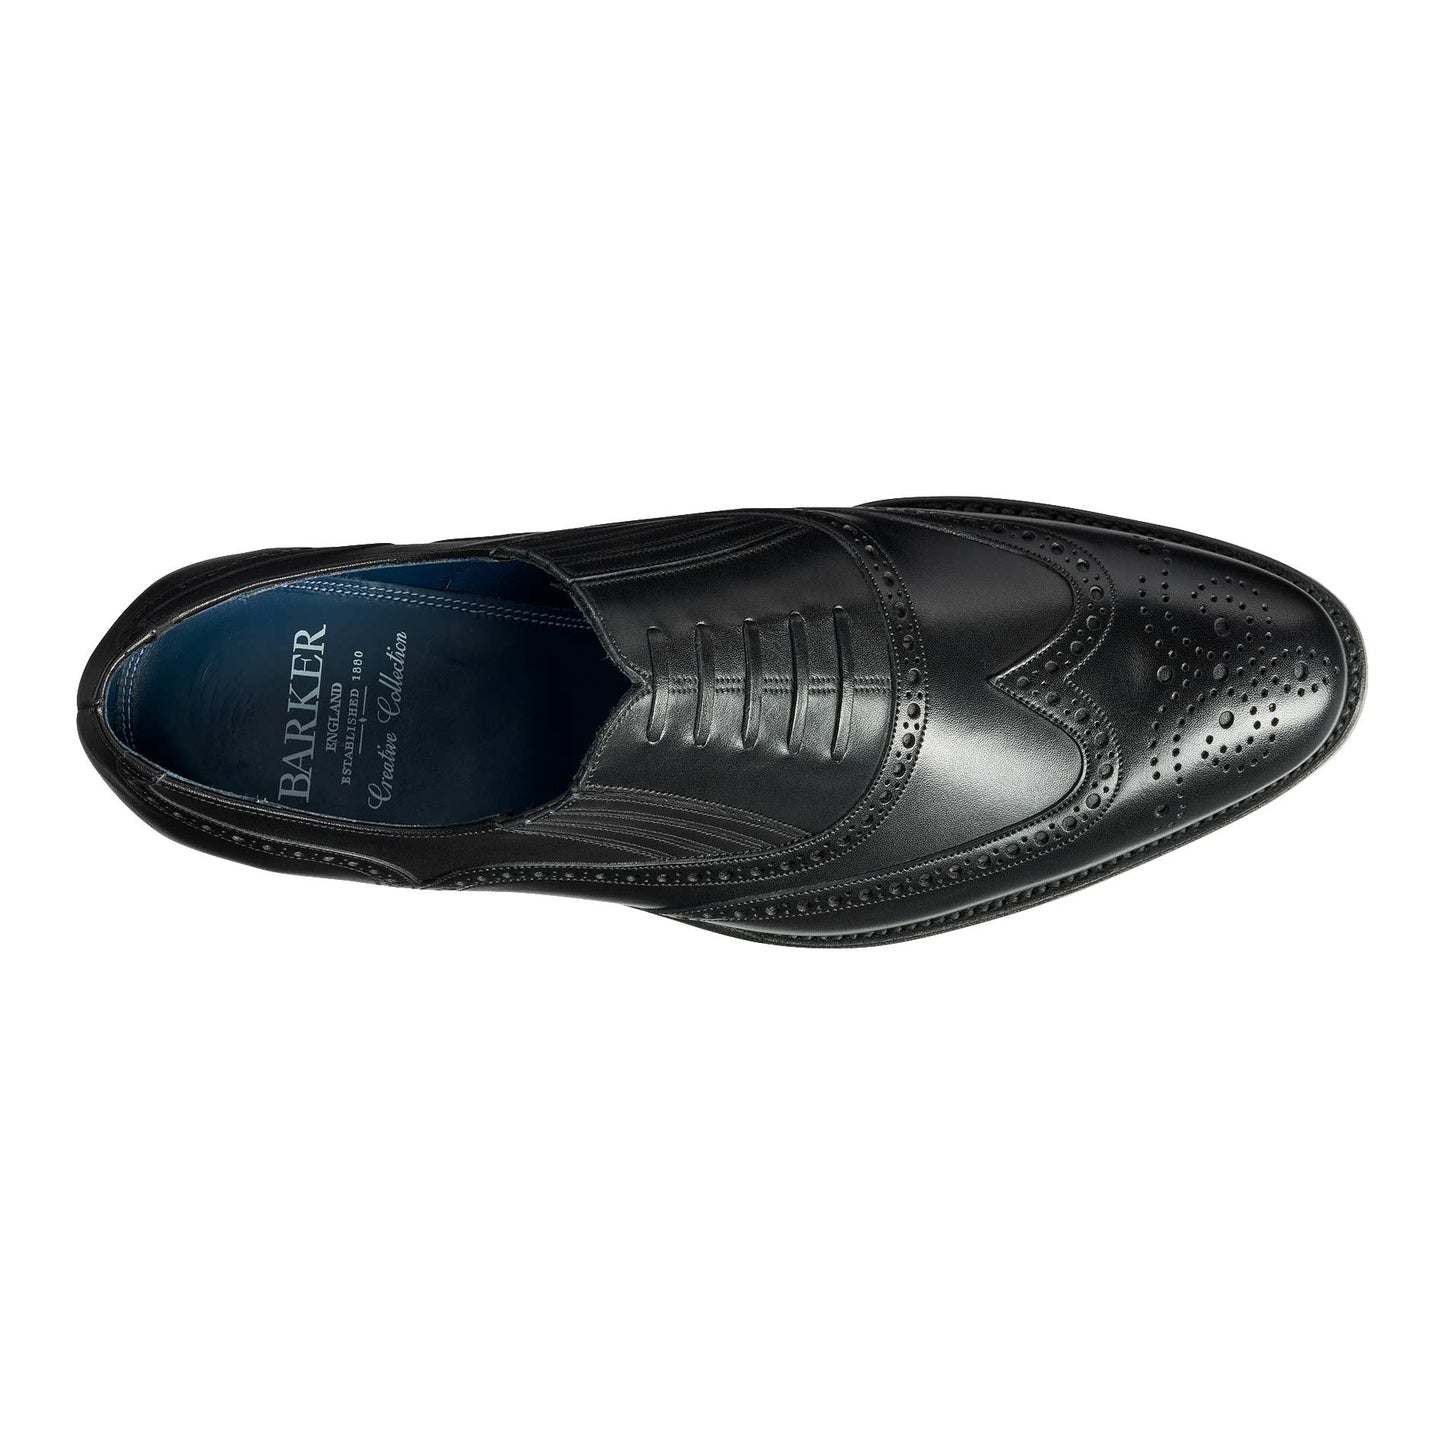 Barker Timothy Black Calf Formal Shoes